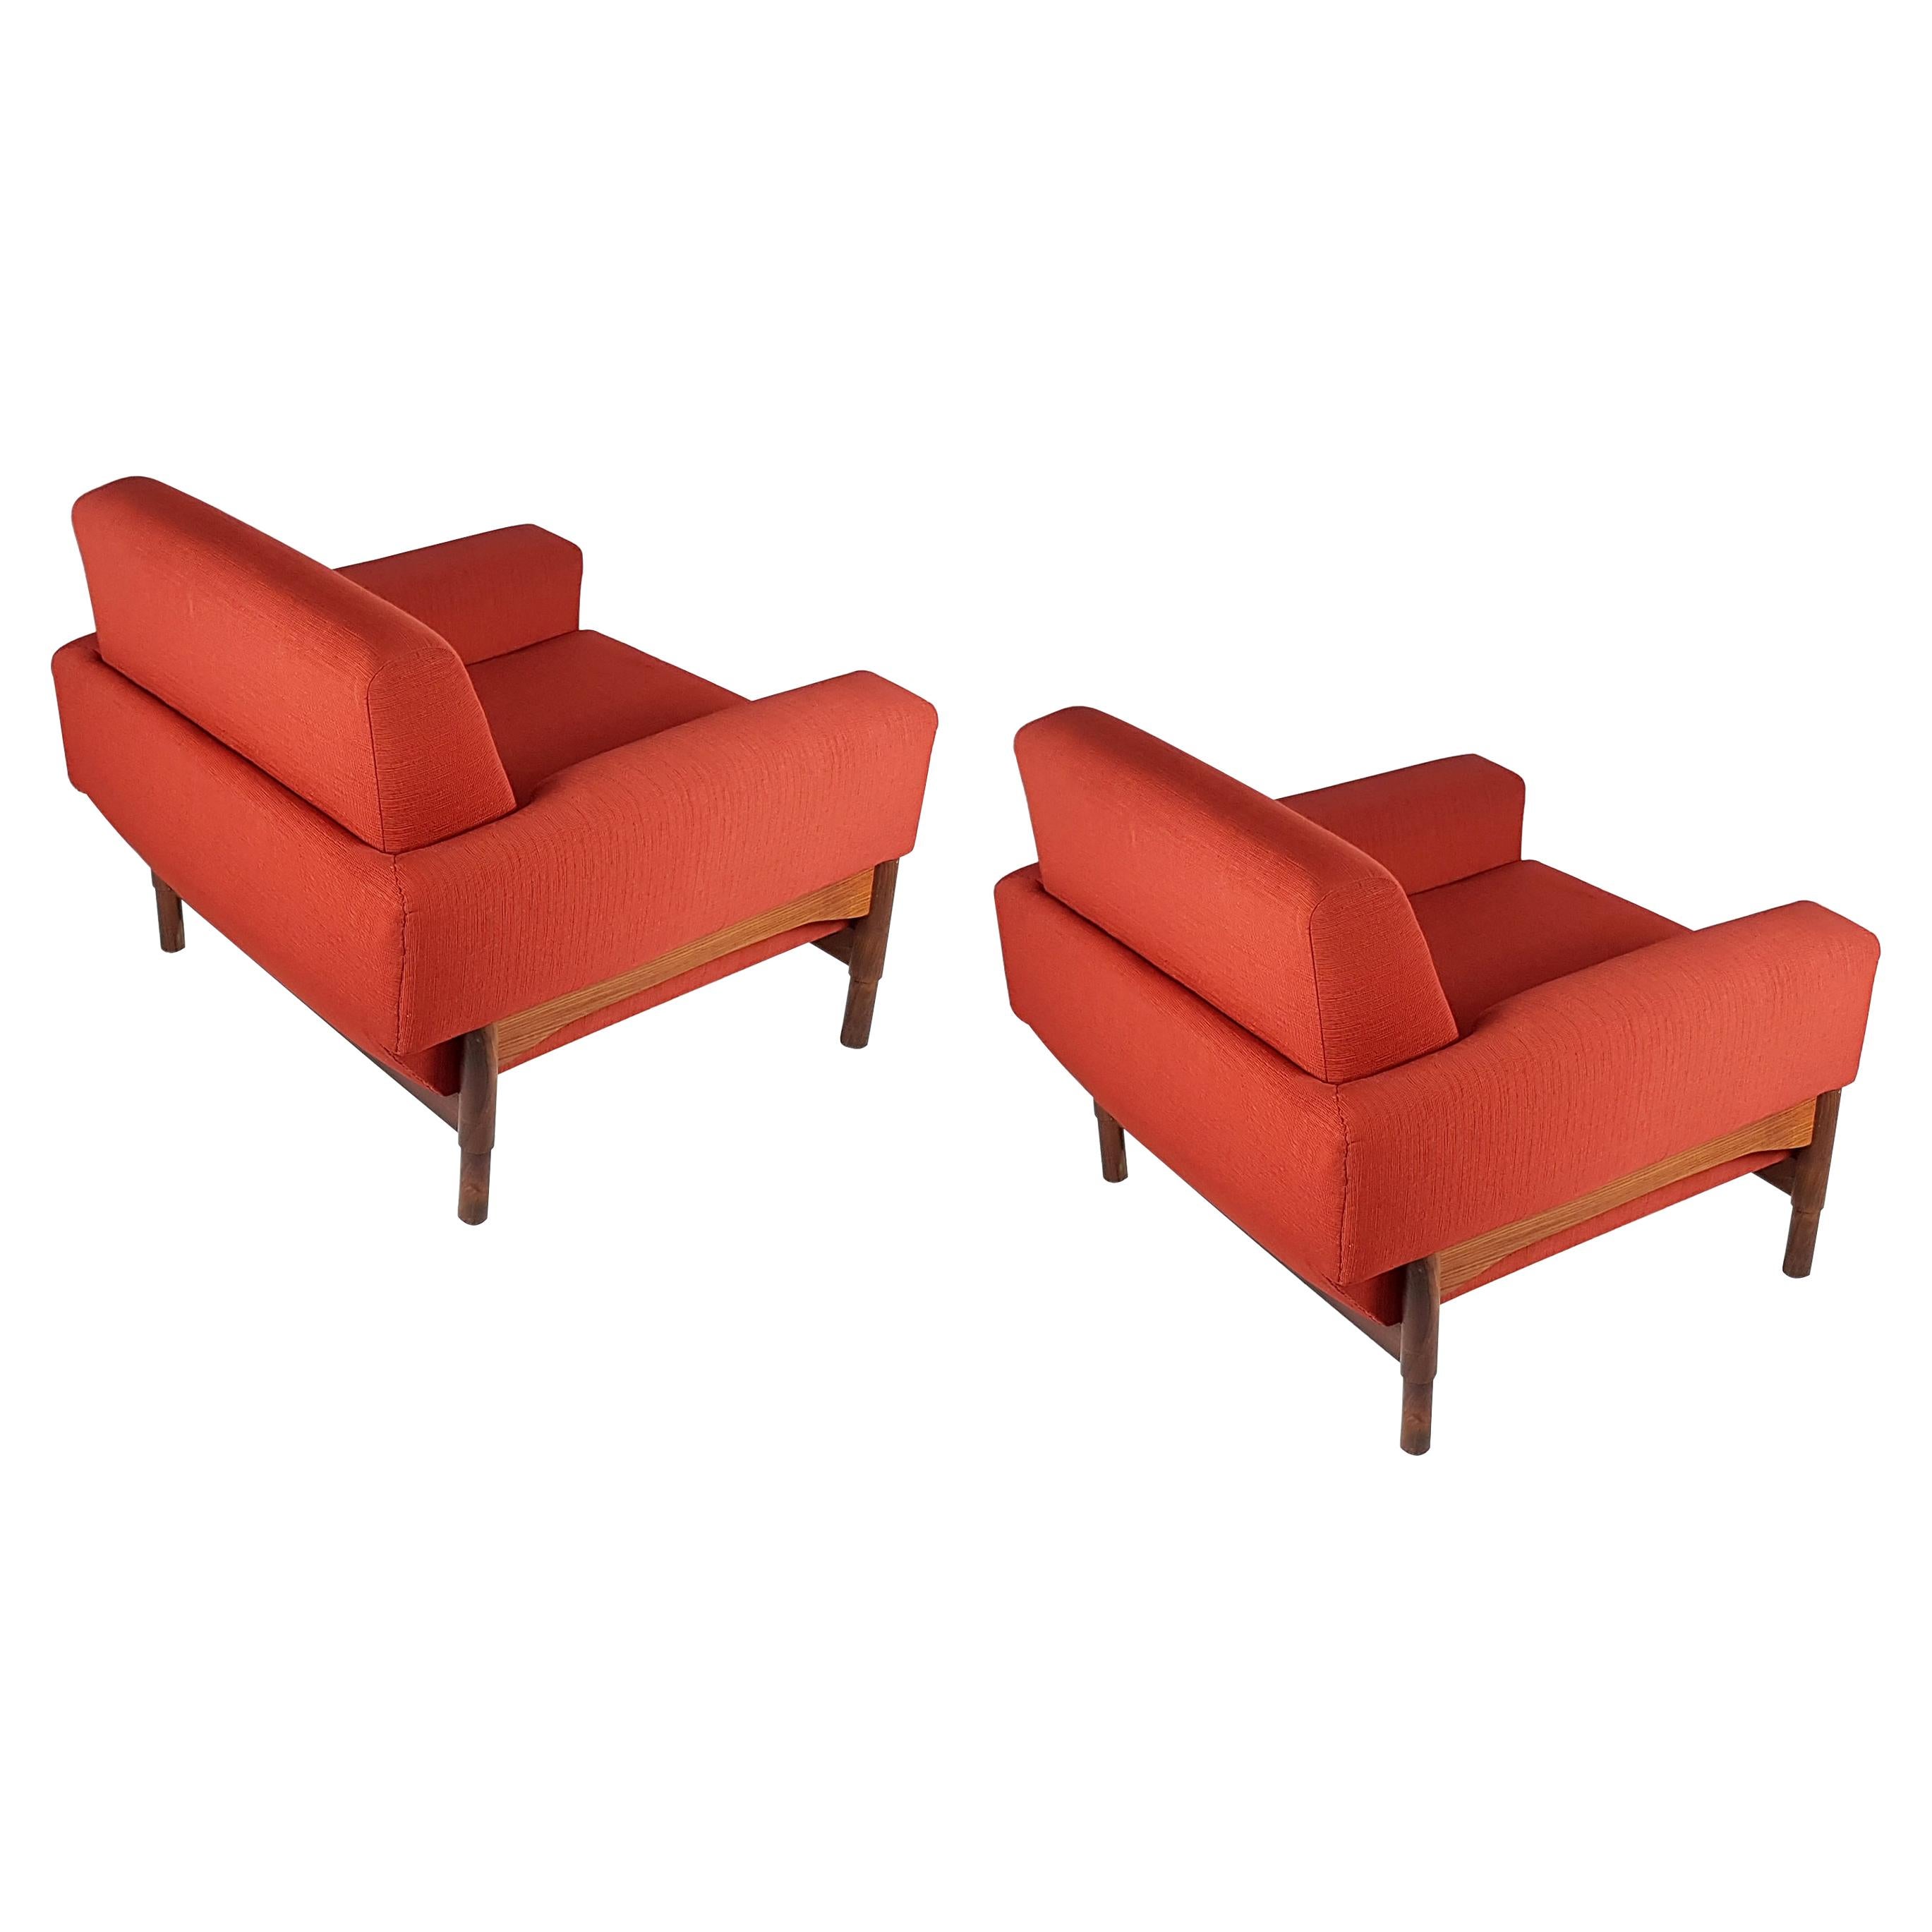 Paire de fauteuils en bois et tissu rouge brique de S. Saporiti pour F.Lli Saporiti, 1960